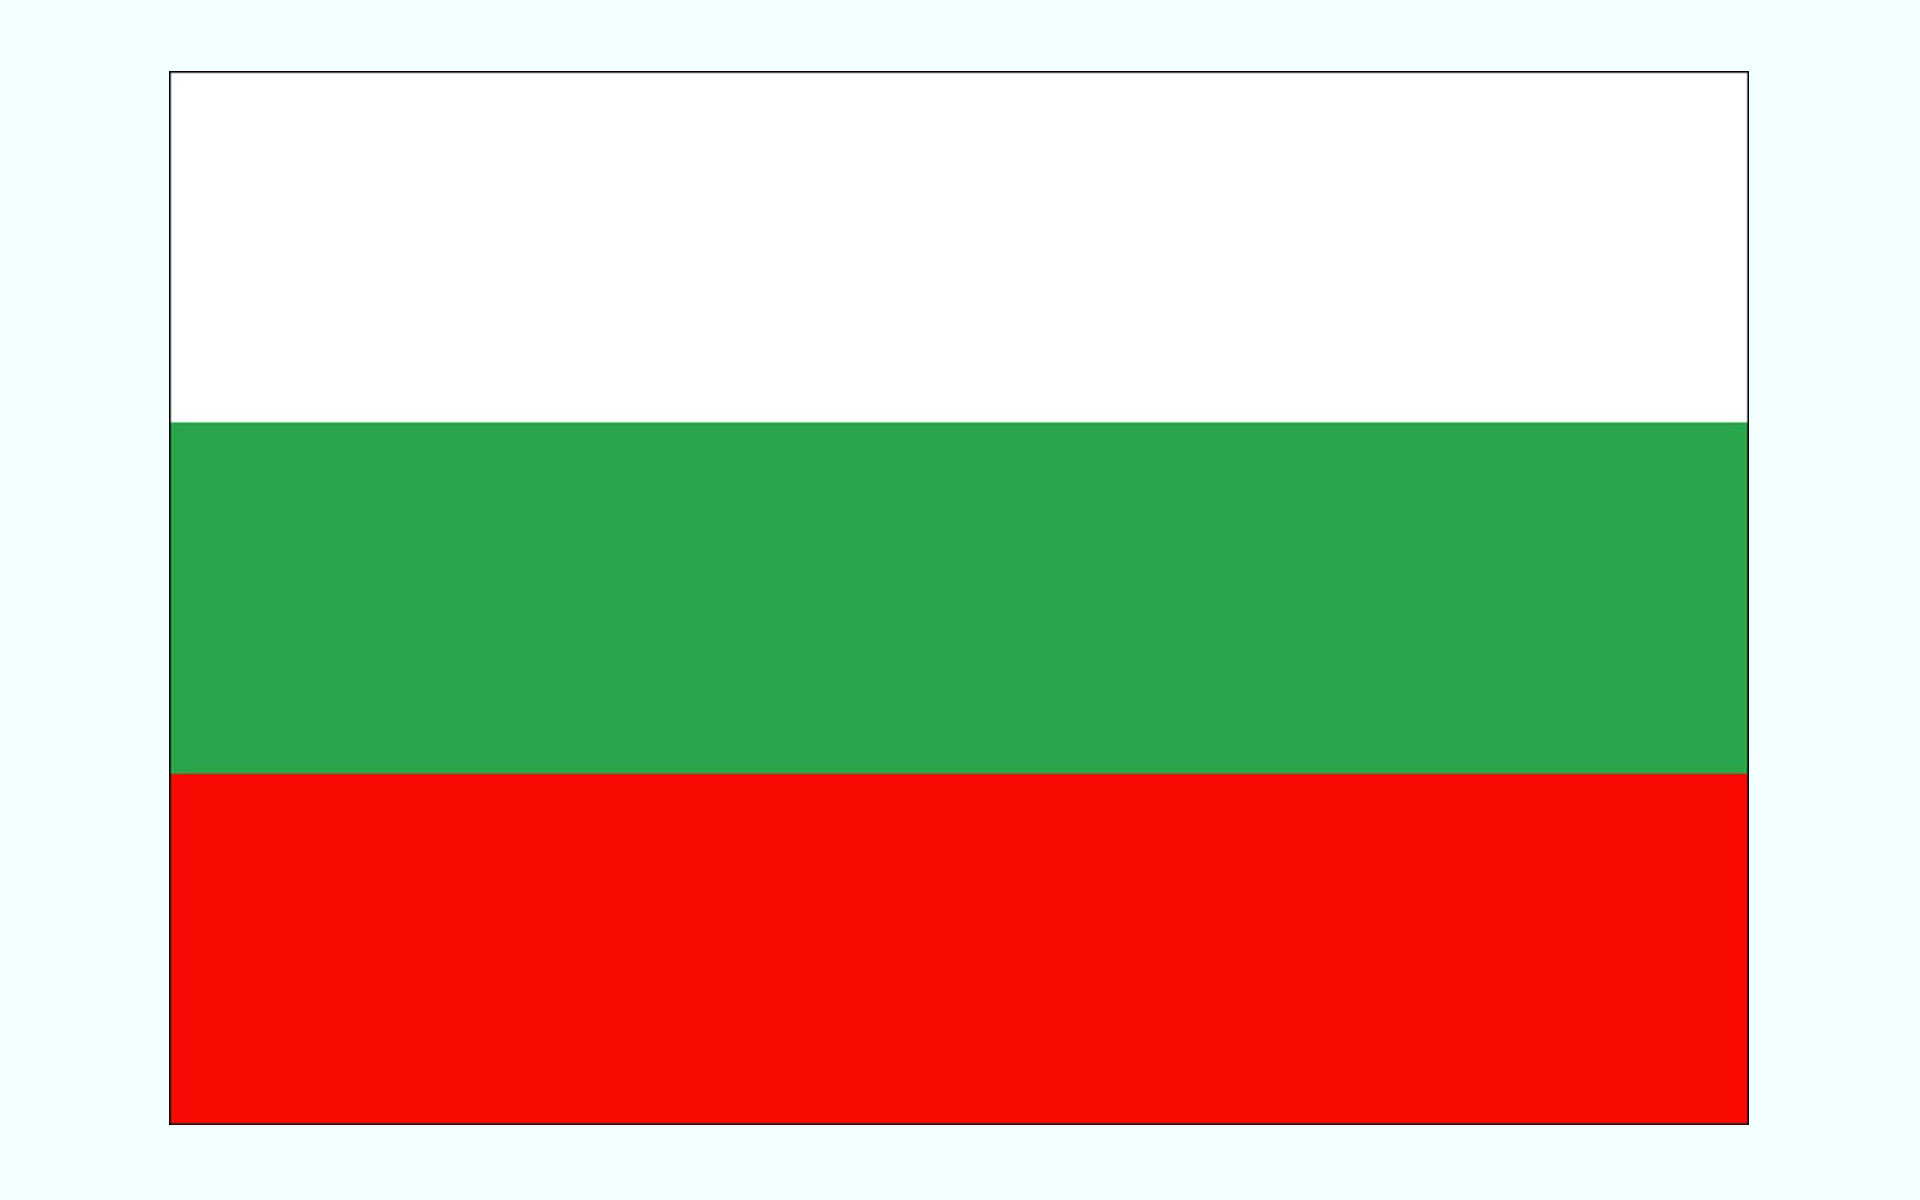 عکس پرچم کشور بلغارستان
